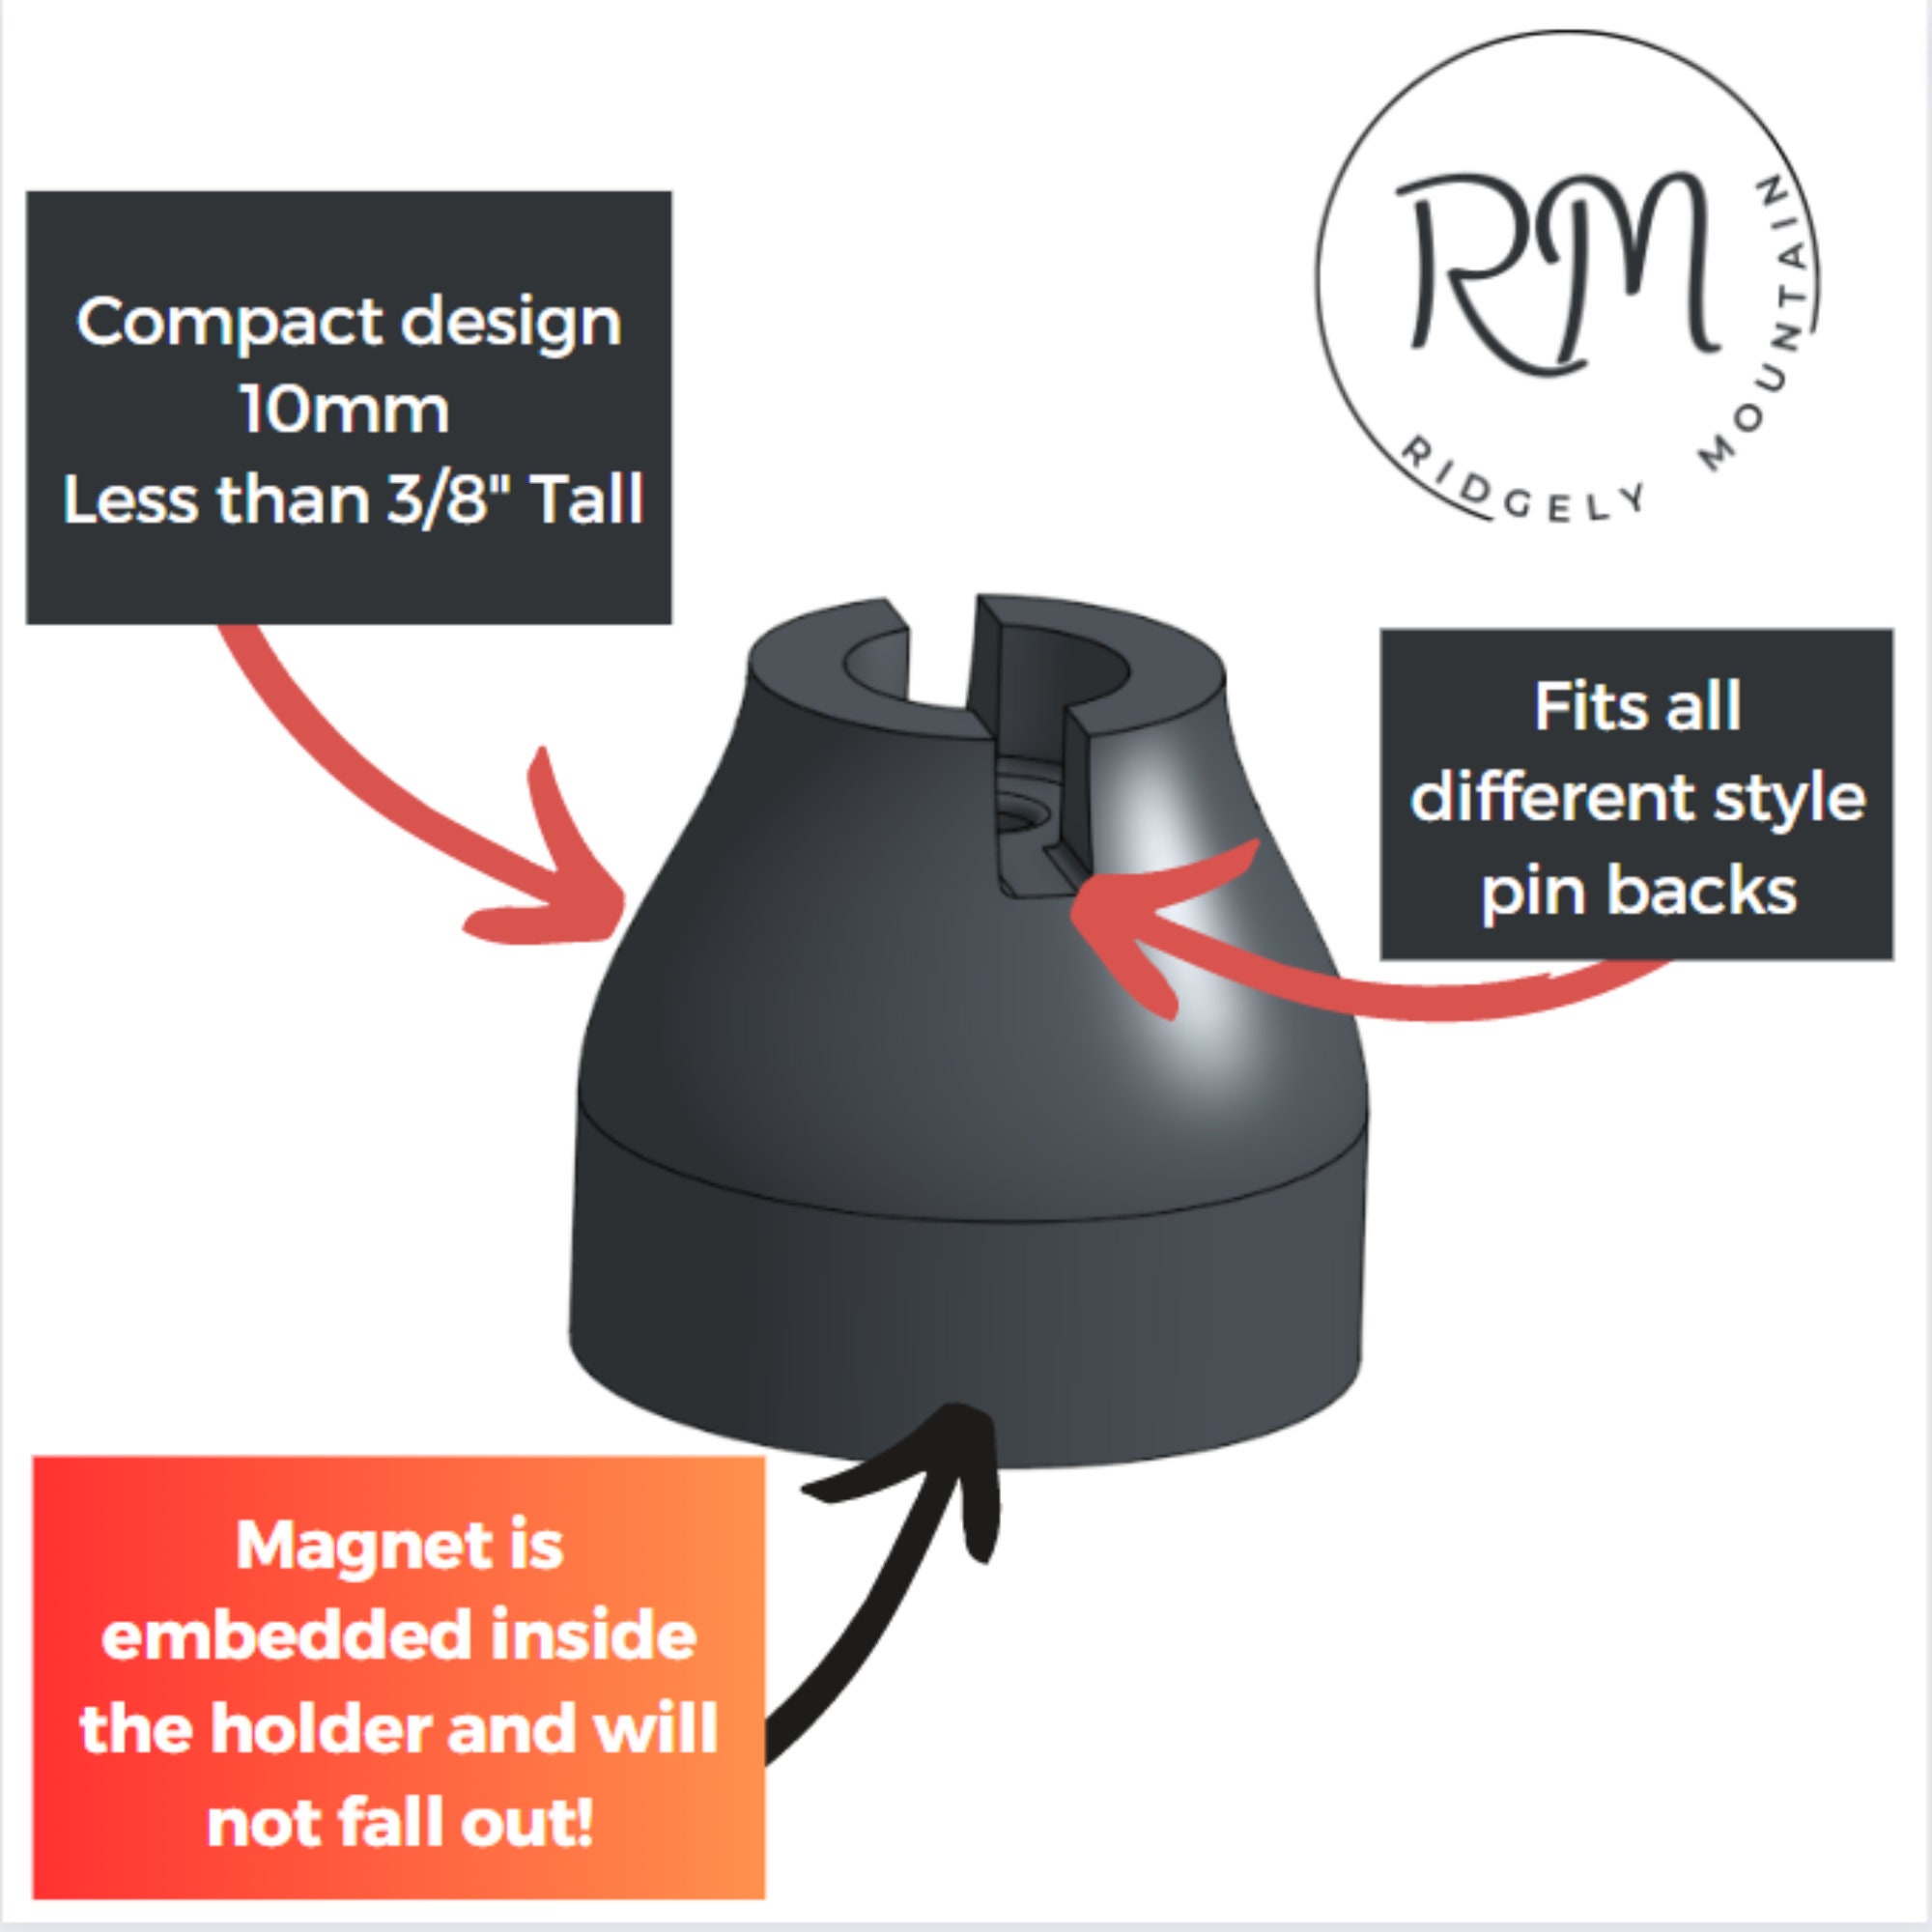 Arturbo 20pcs Magnetic Pin Backs for Pin Displays Convert Enamel Pins to Fridge Magnetic Board, Metal Pin Backs Silver Locking Pin Keepers Locking